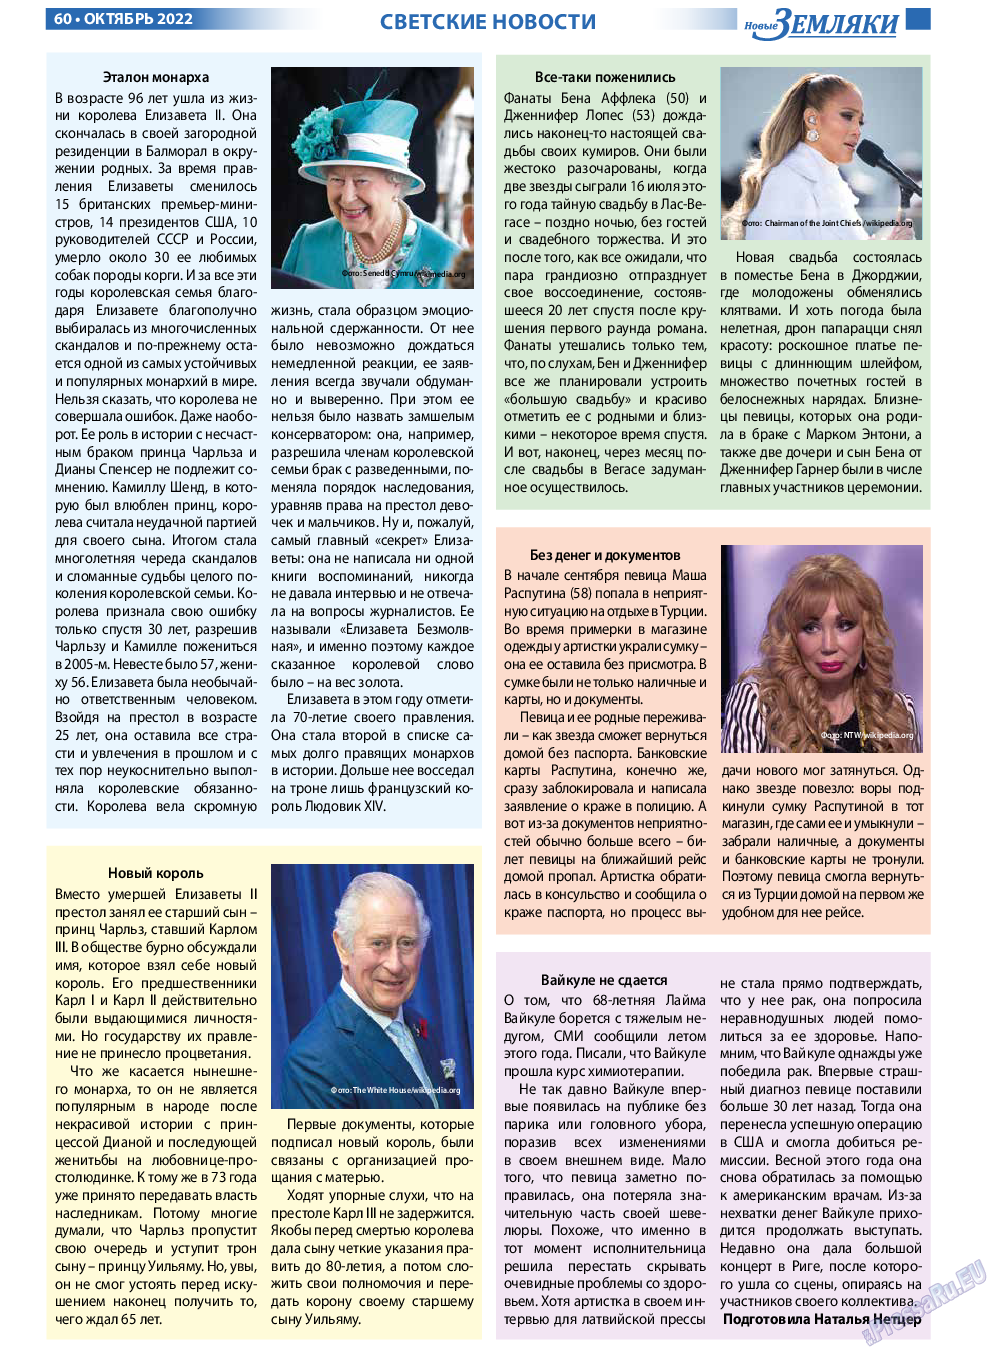 Новые Земляки, газета. 2022 №10 стр.60